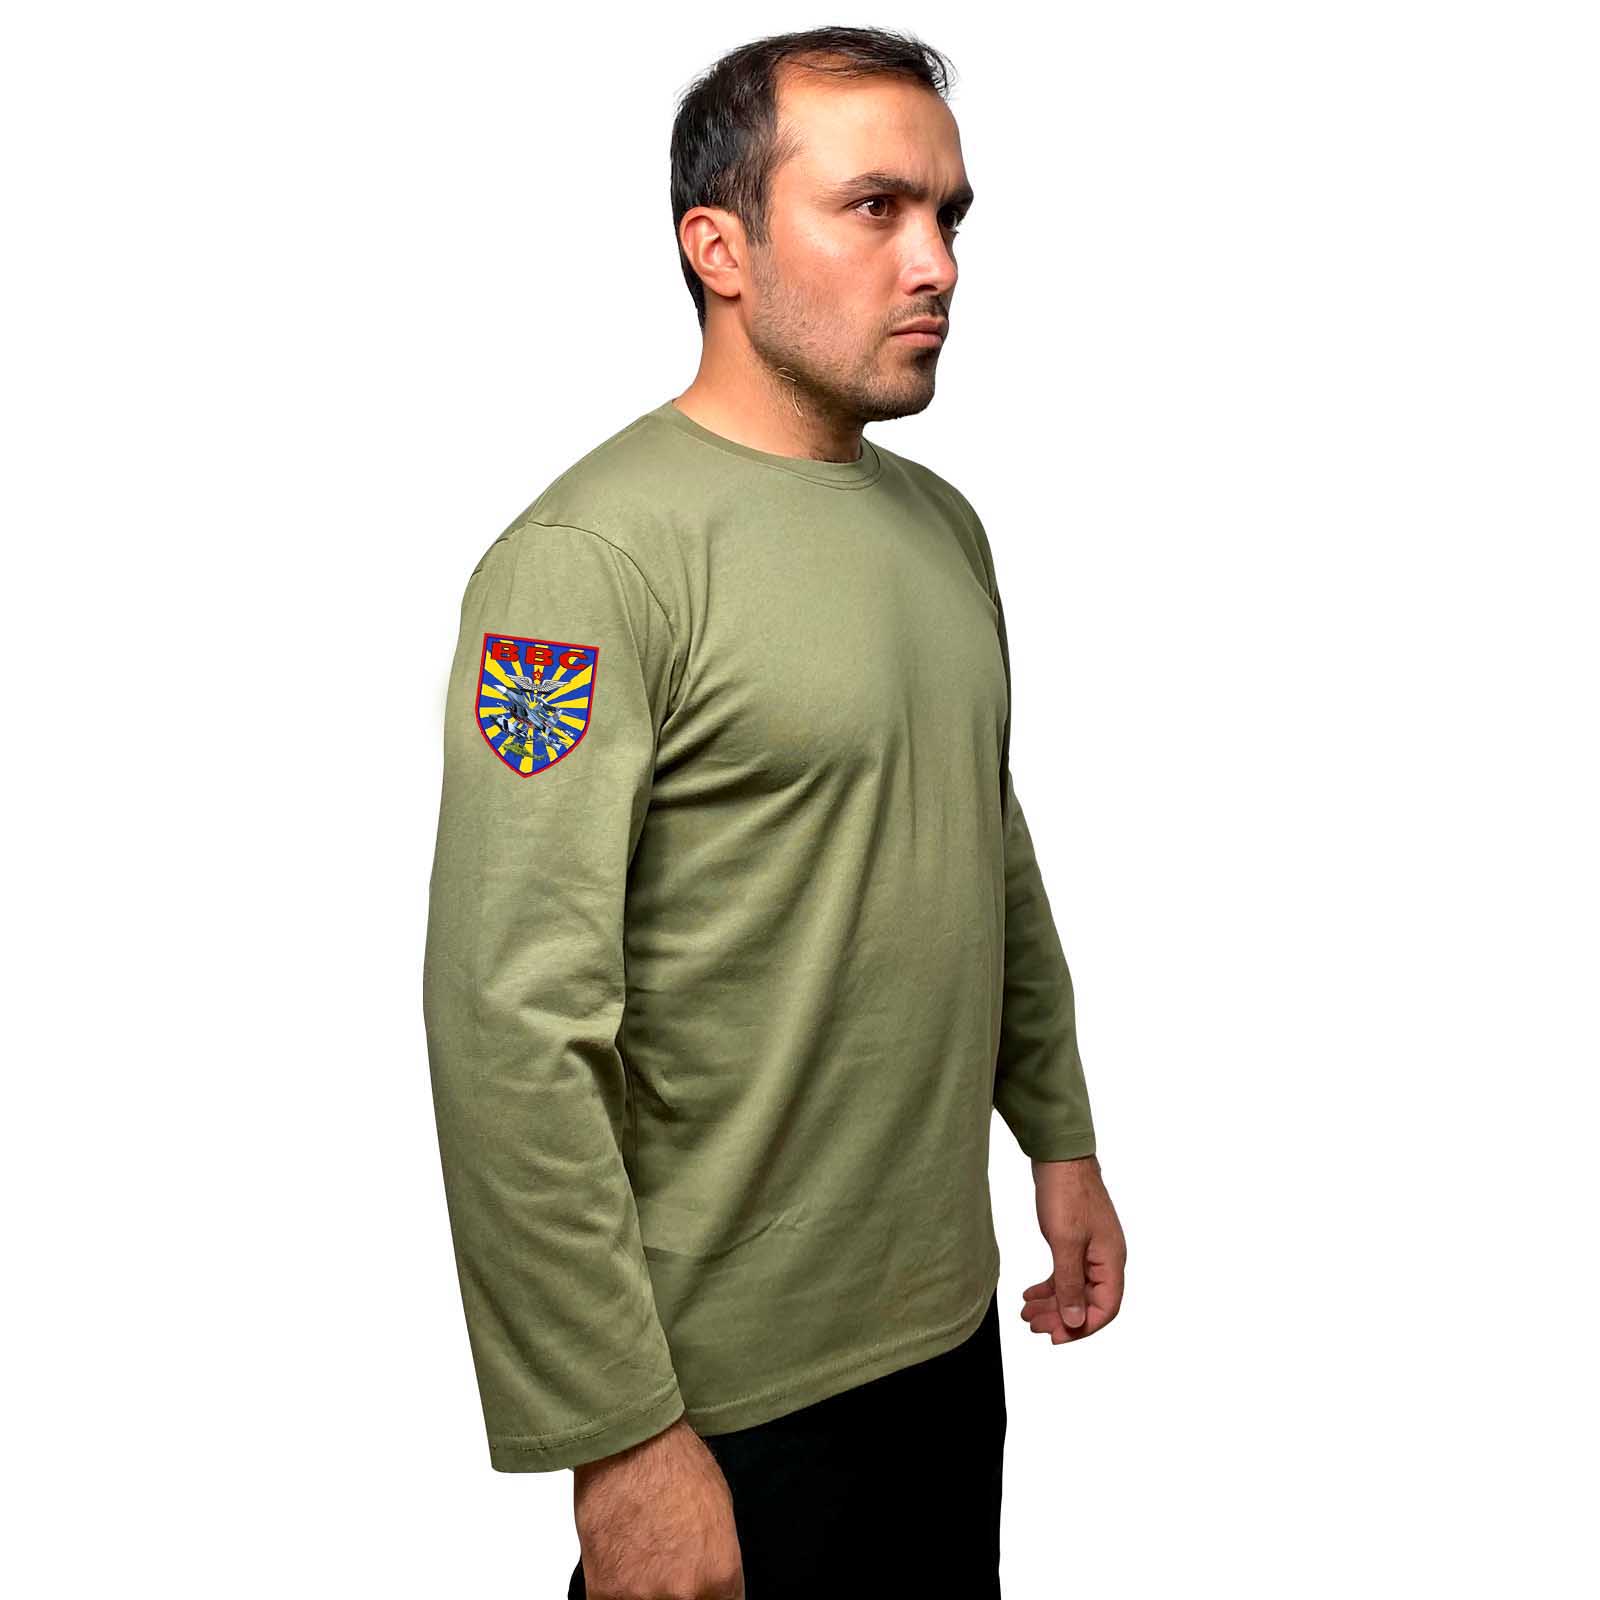 Купить футболку с длинным рукавом оливковую надежную с термоаппликацией ВВС онлайн